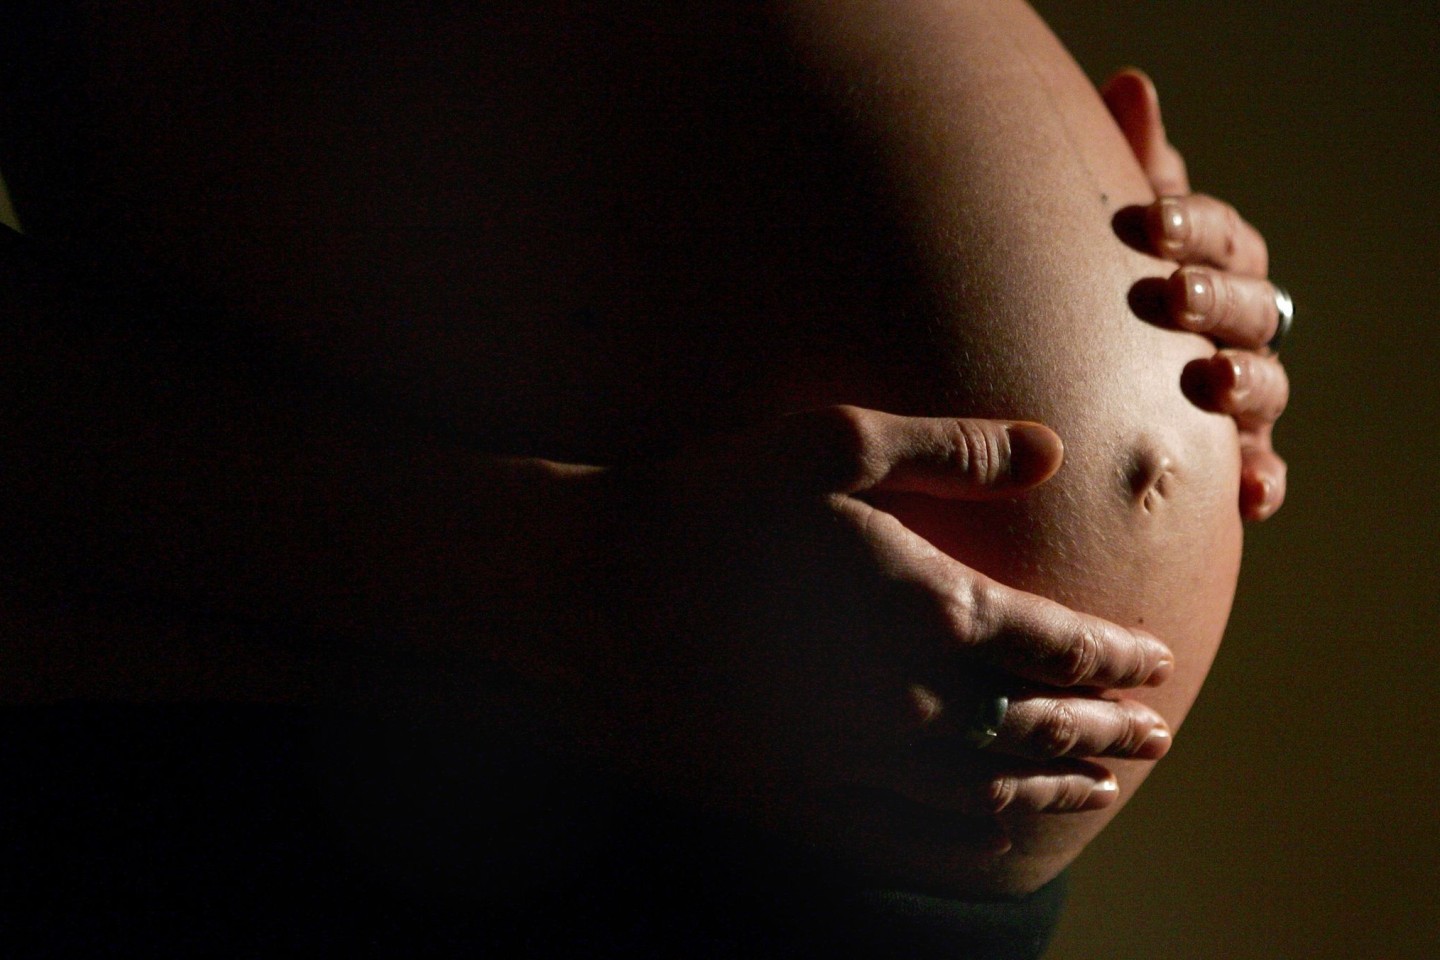 Alle zwei Minuten stirbt nach einem Bericht der Vereinten Nationen eine Frau während der Schwangerschaft oder der Geburt.